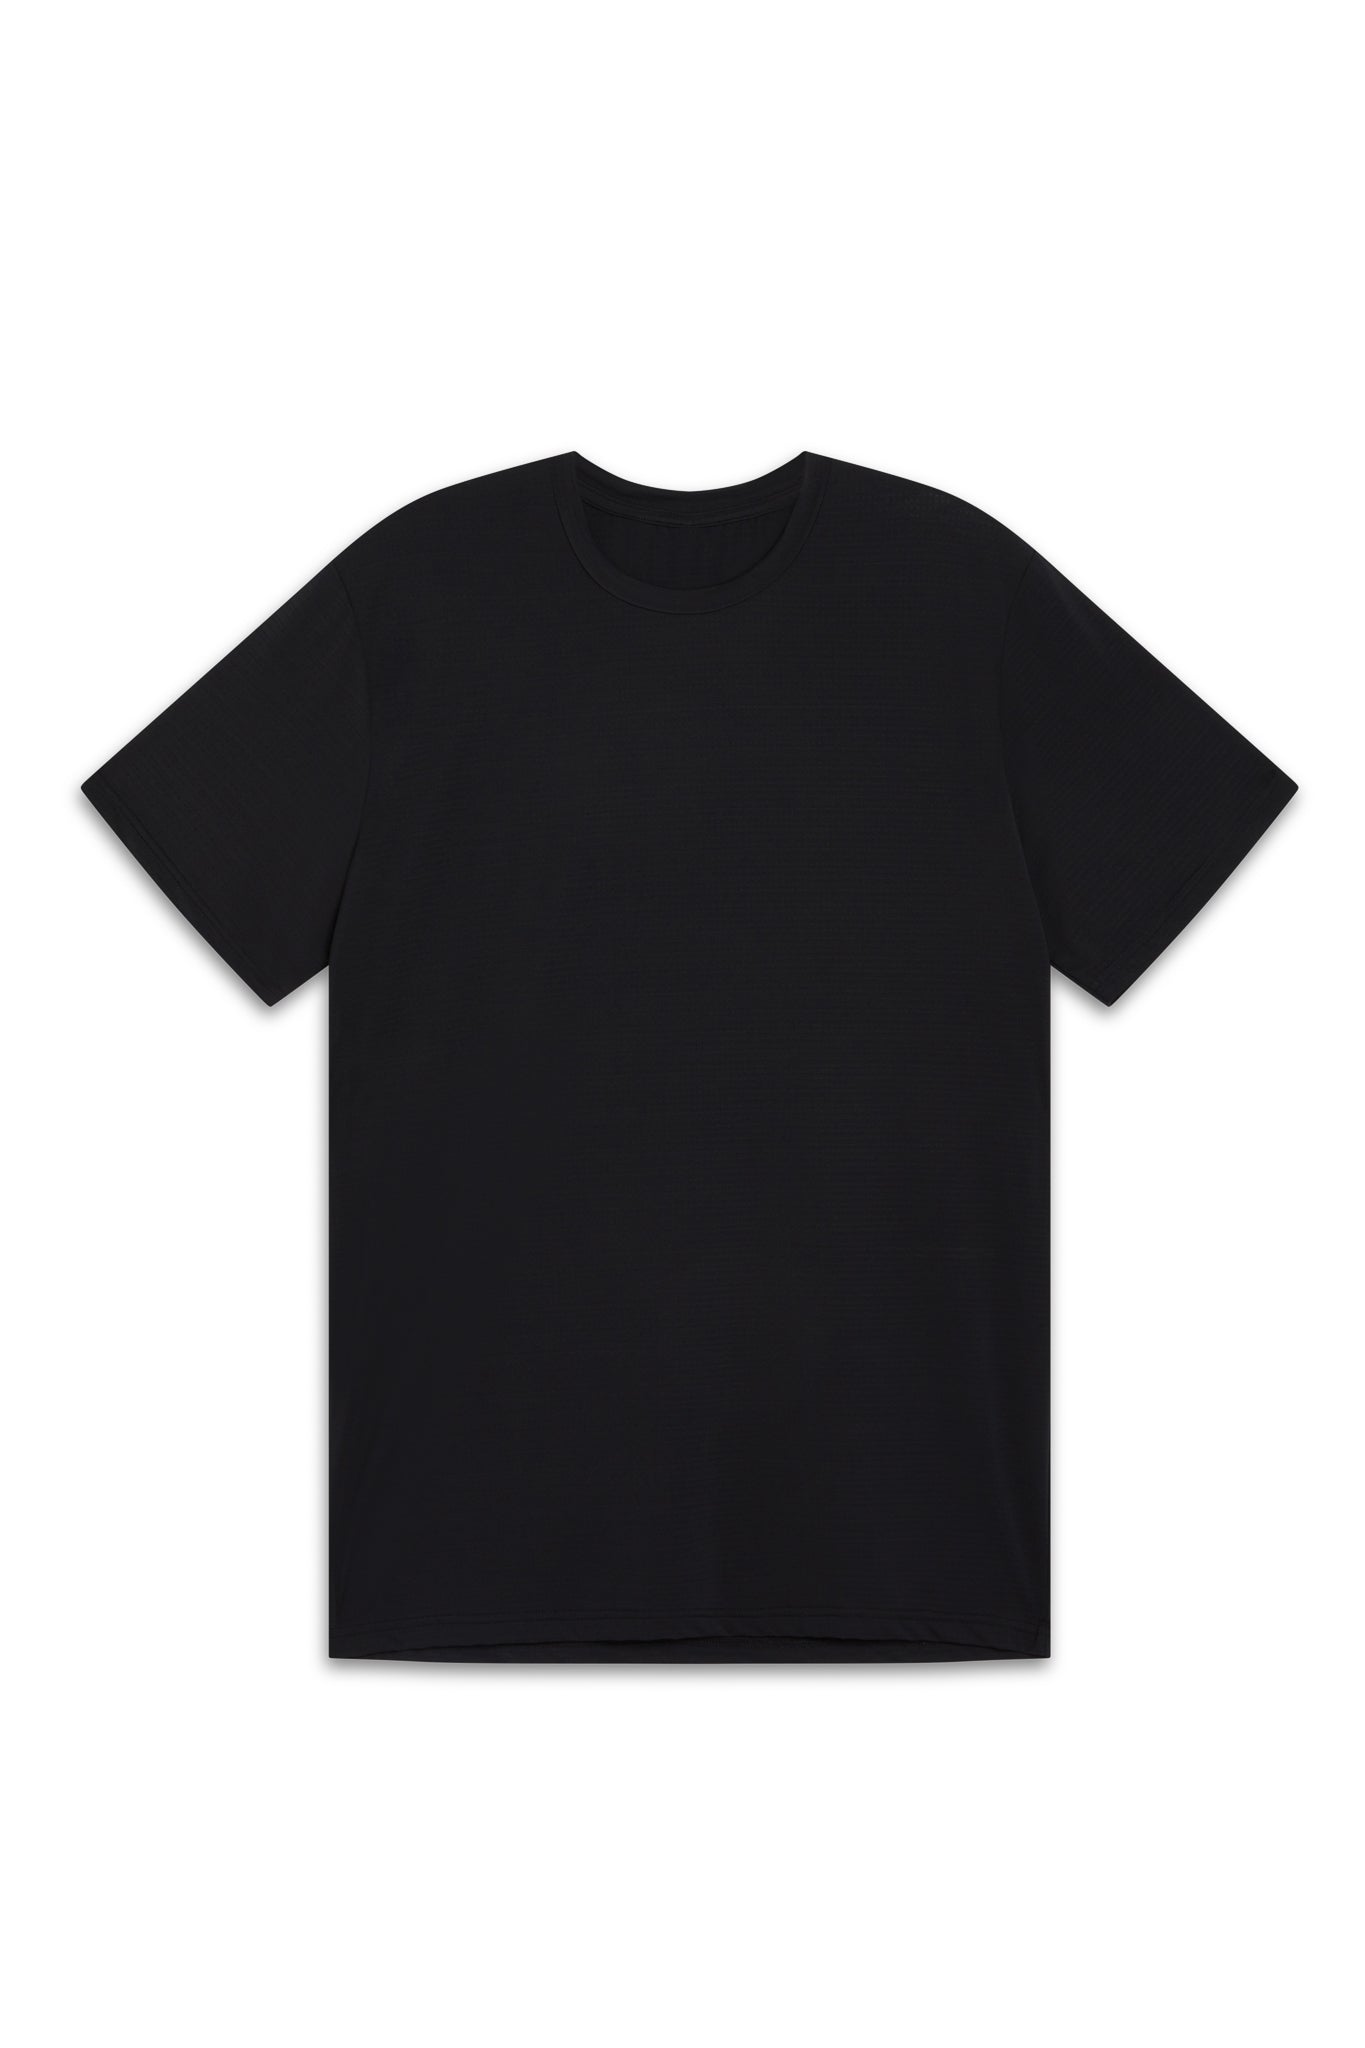 Men's Performance T-shirt - Jet Black